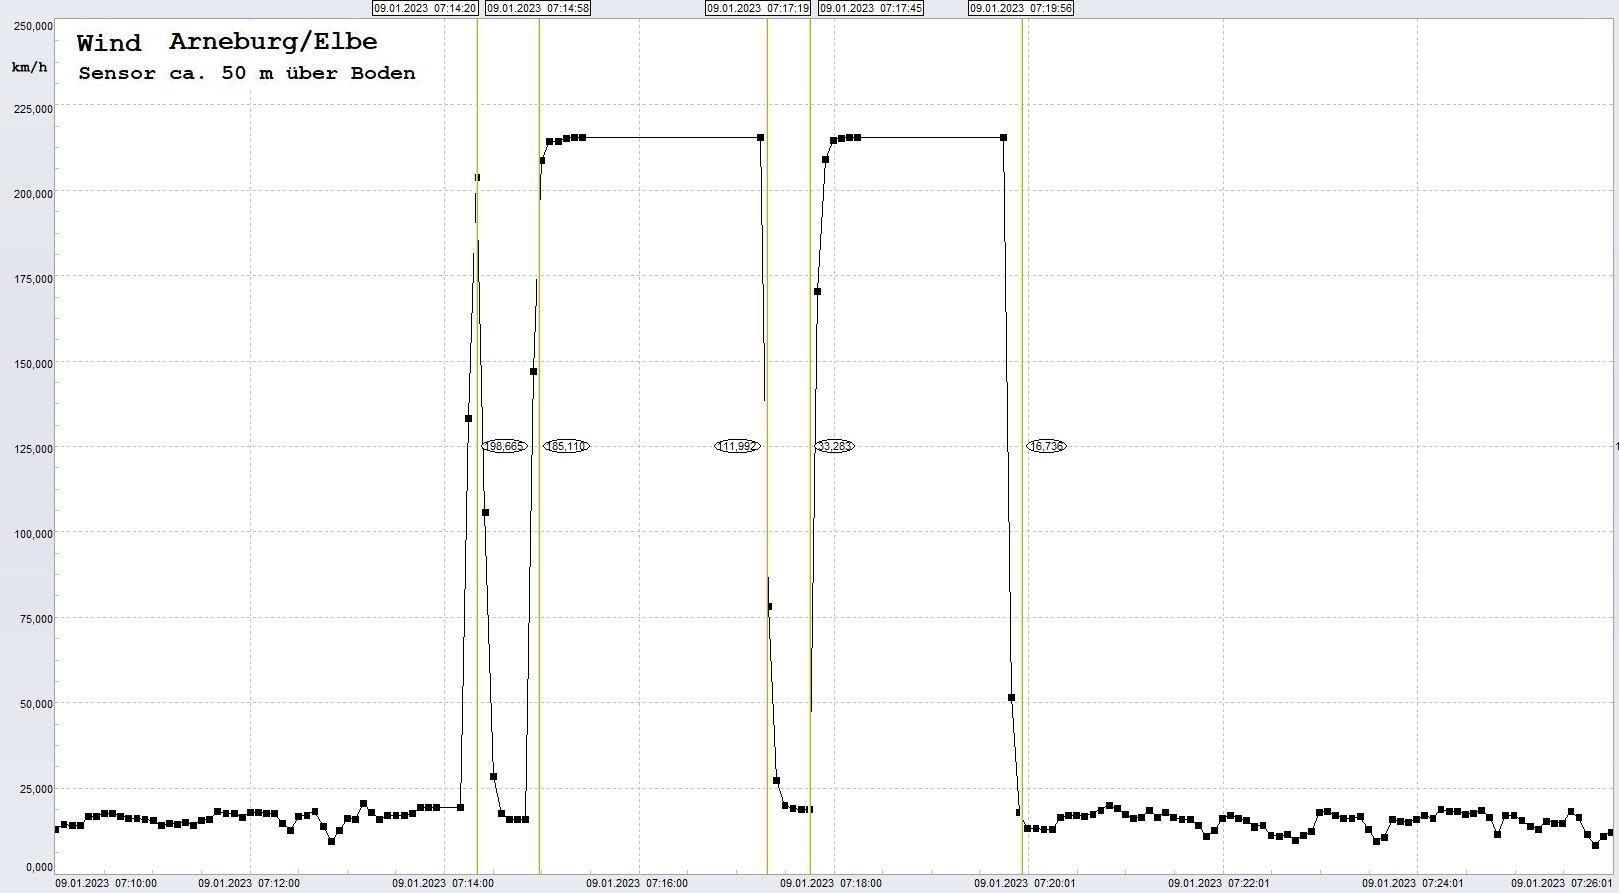 Arneburg: Signalstörung, 09.01.2023, ab ca. 07:10 Uhr
  Sensor setzt immer wieder mit MAX-Wert aus